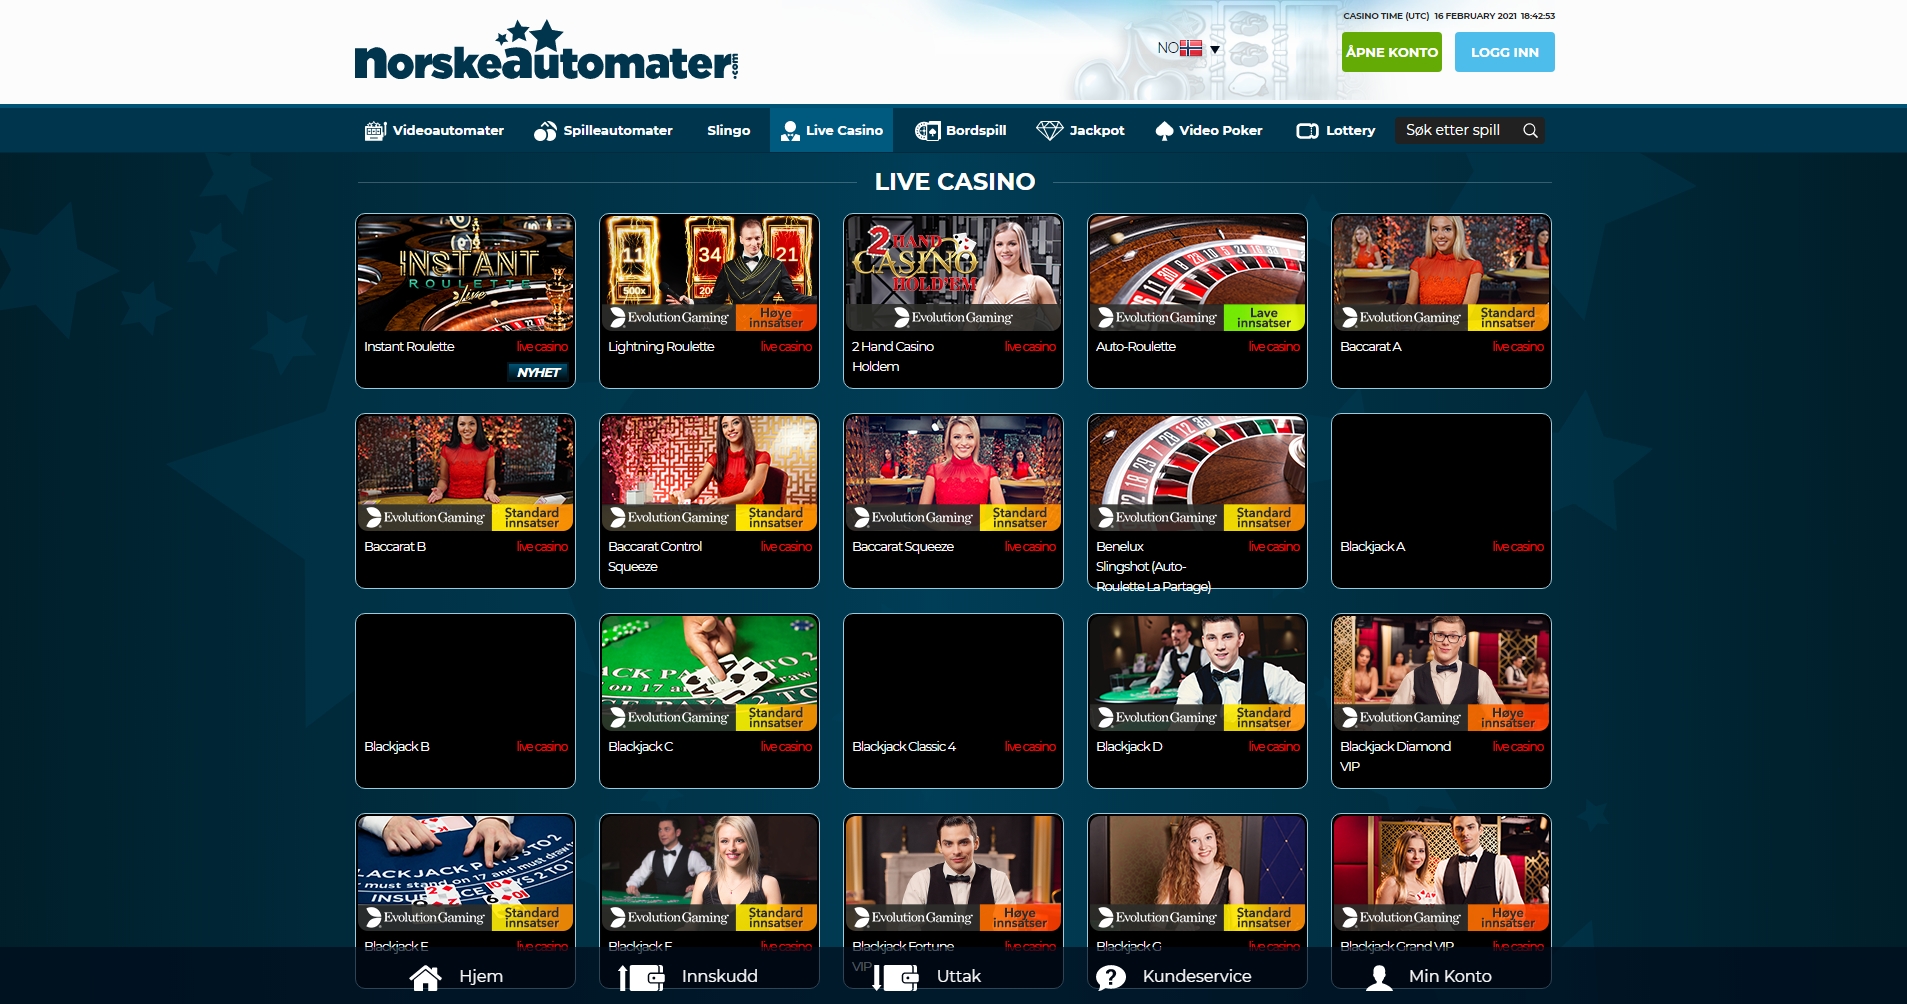 Norske Automater Casino Live Dealer Games